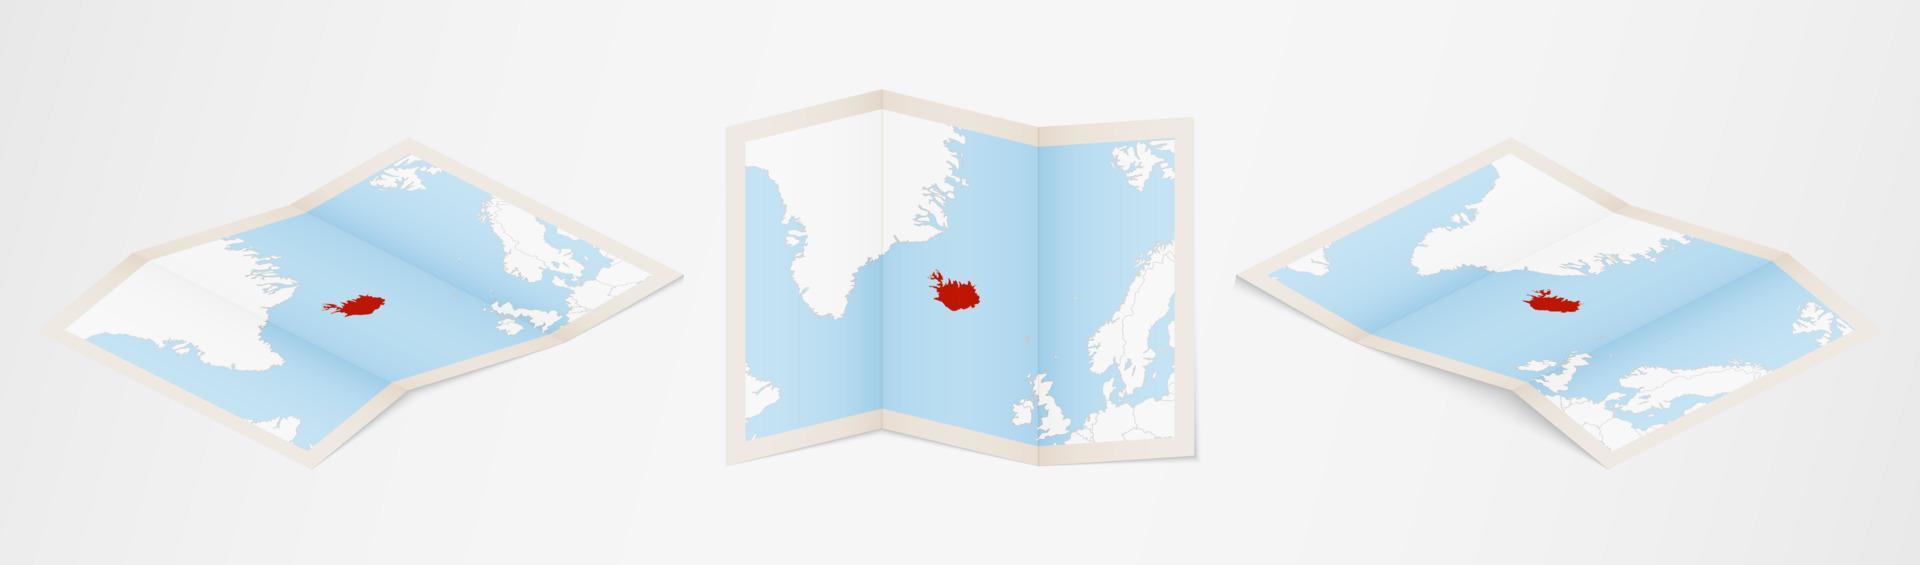 mapa plegado de islandia en tres versiones diferentes. vector